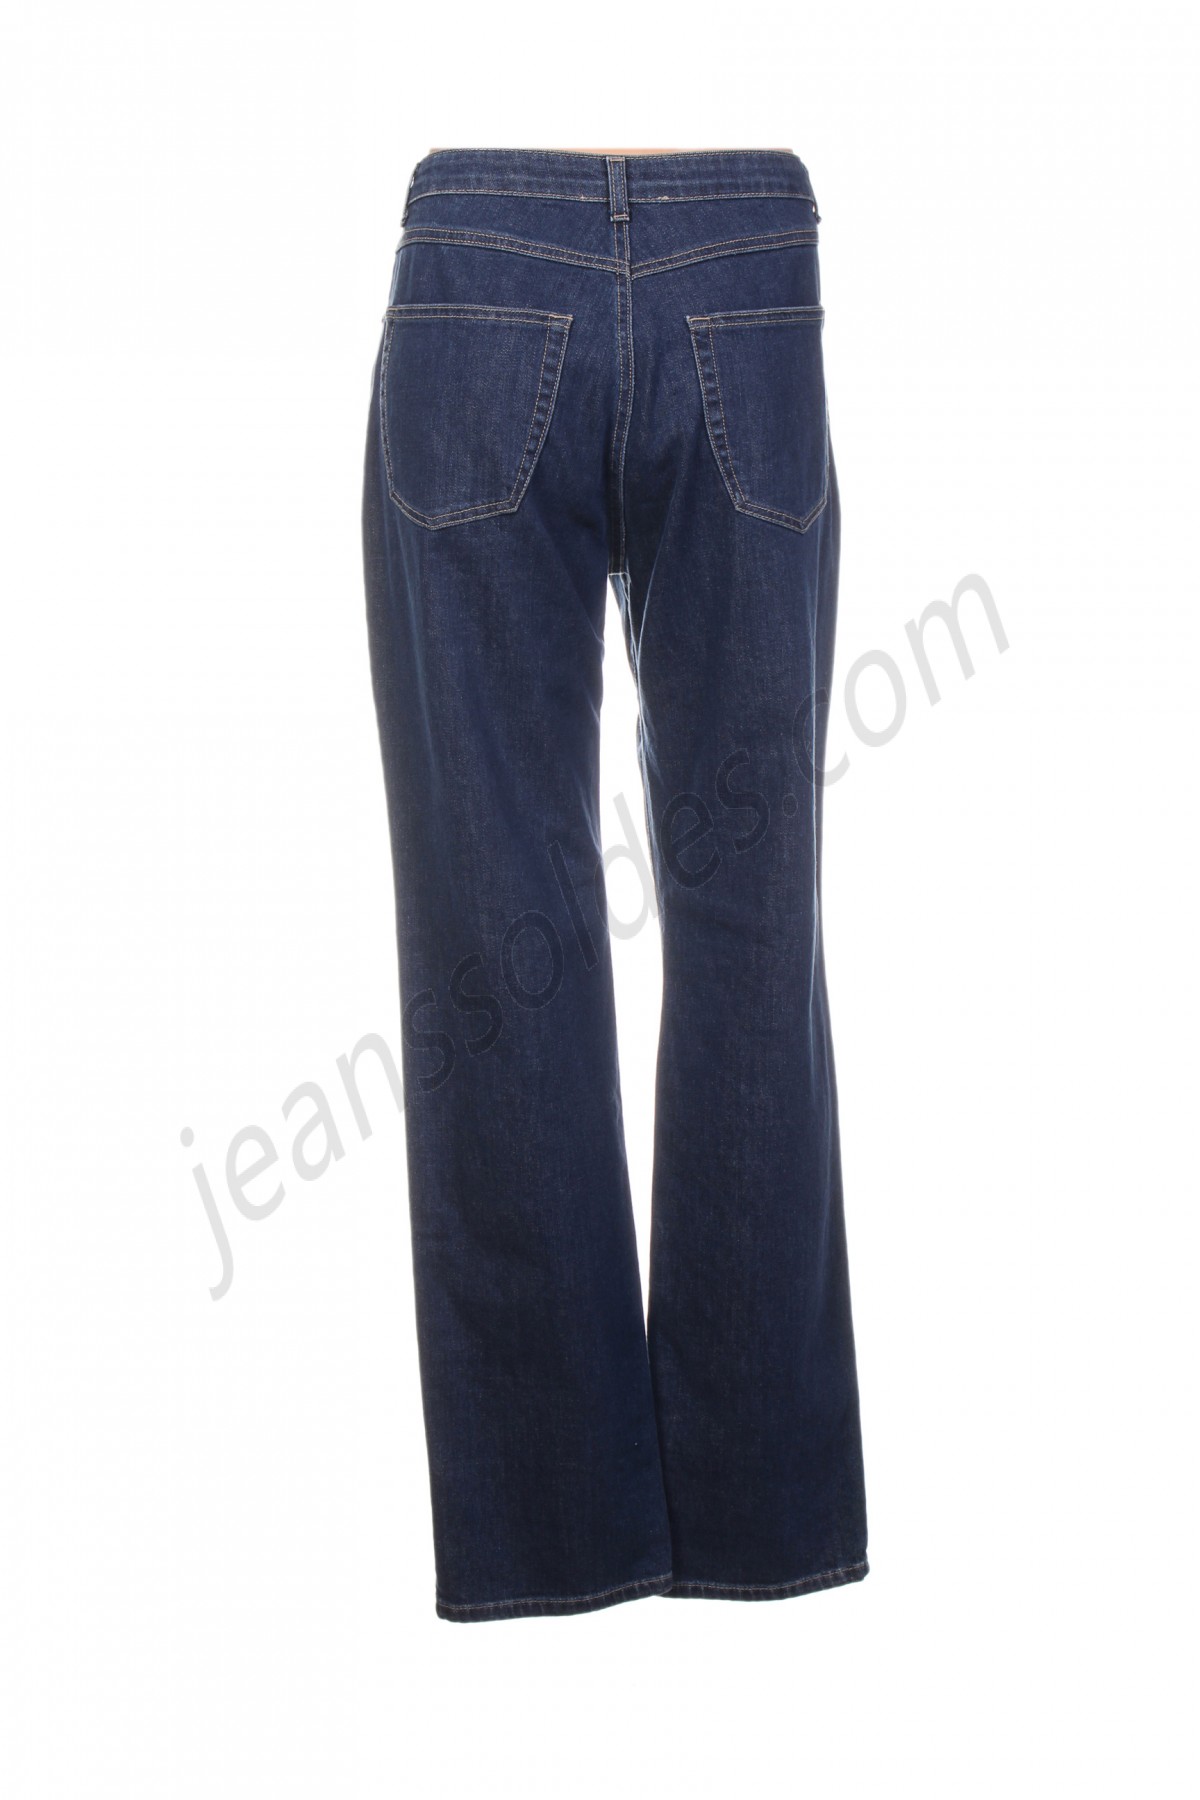 jean gabriel-Jeans coupe slim prix d’amis - -1